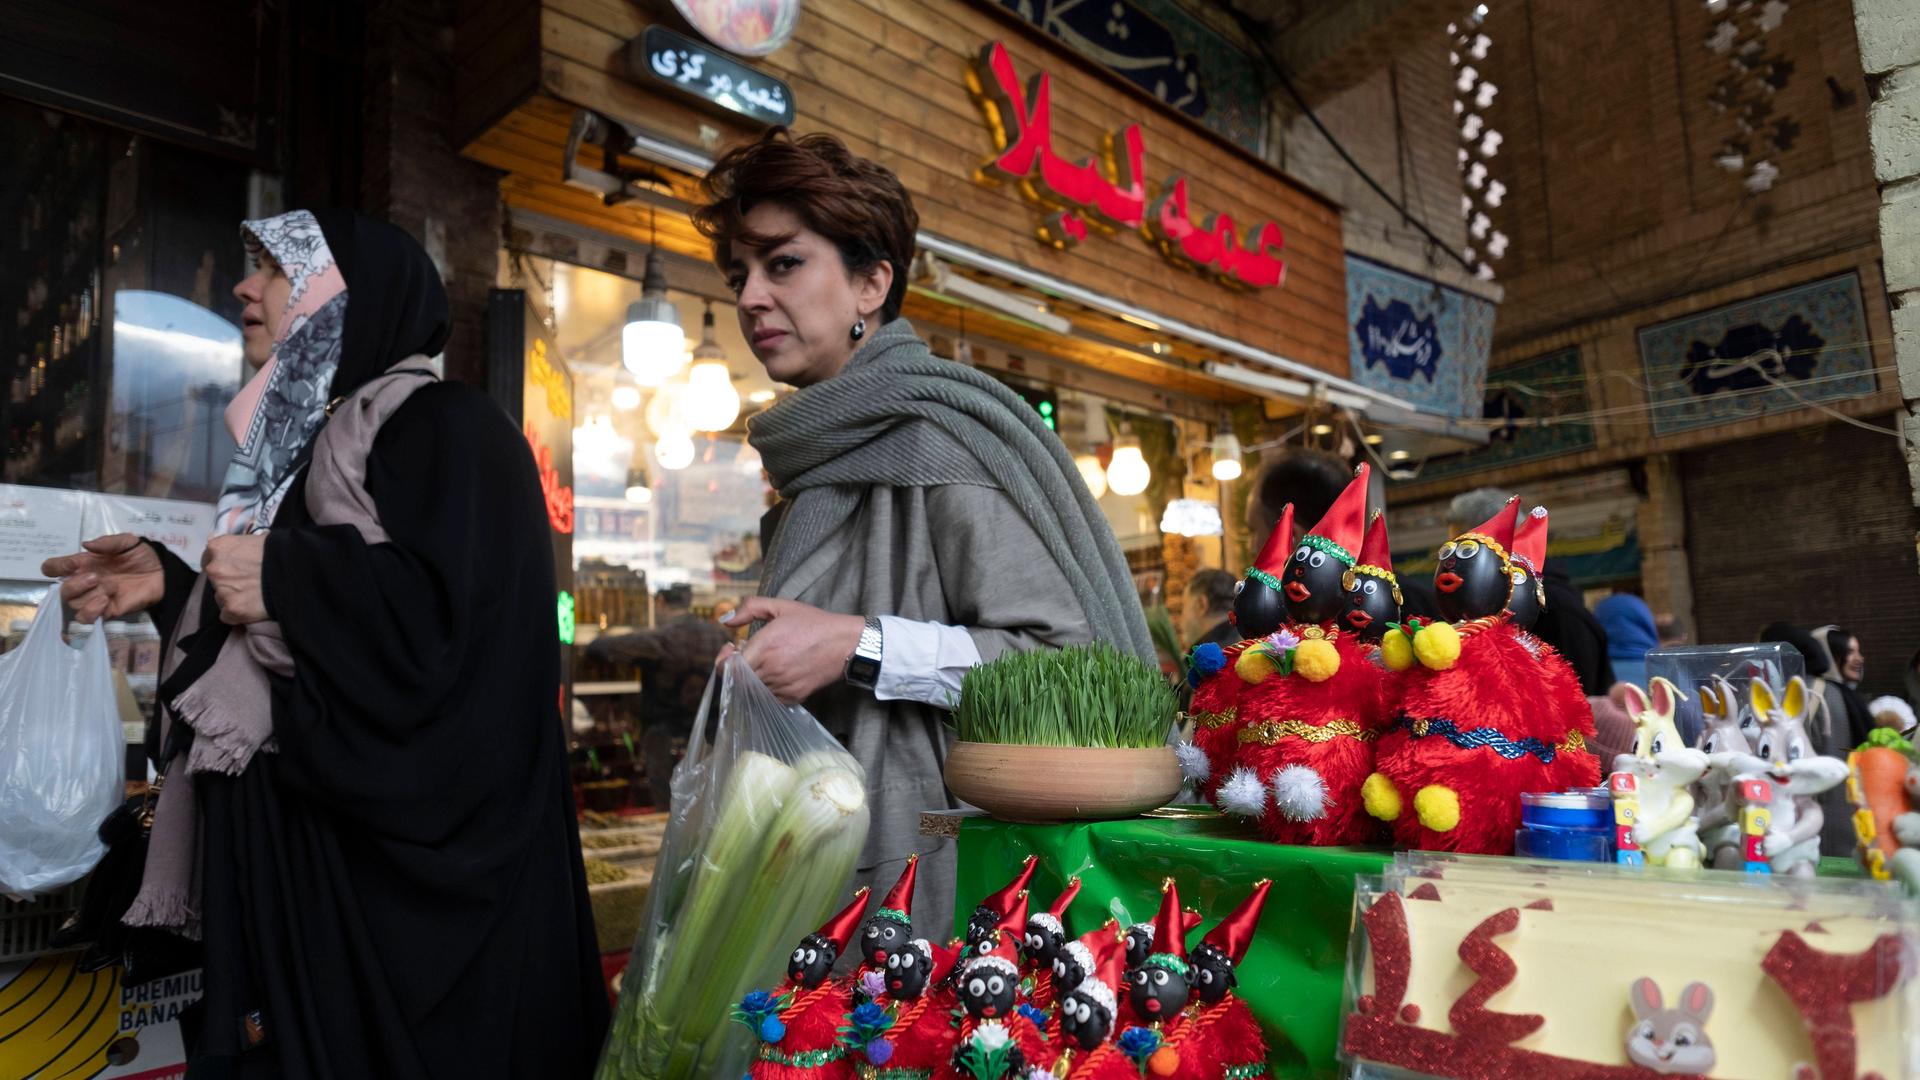 Einkauf für das iranische Neujahr: Eine von zwei Frauen trägt nicht dabei gesetzlich vorgeschriebene Kopftuch in der Öffentlichkeit - ein stiller Protest